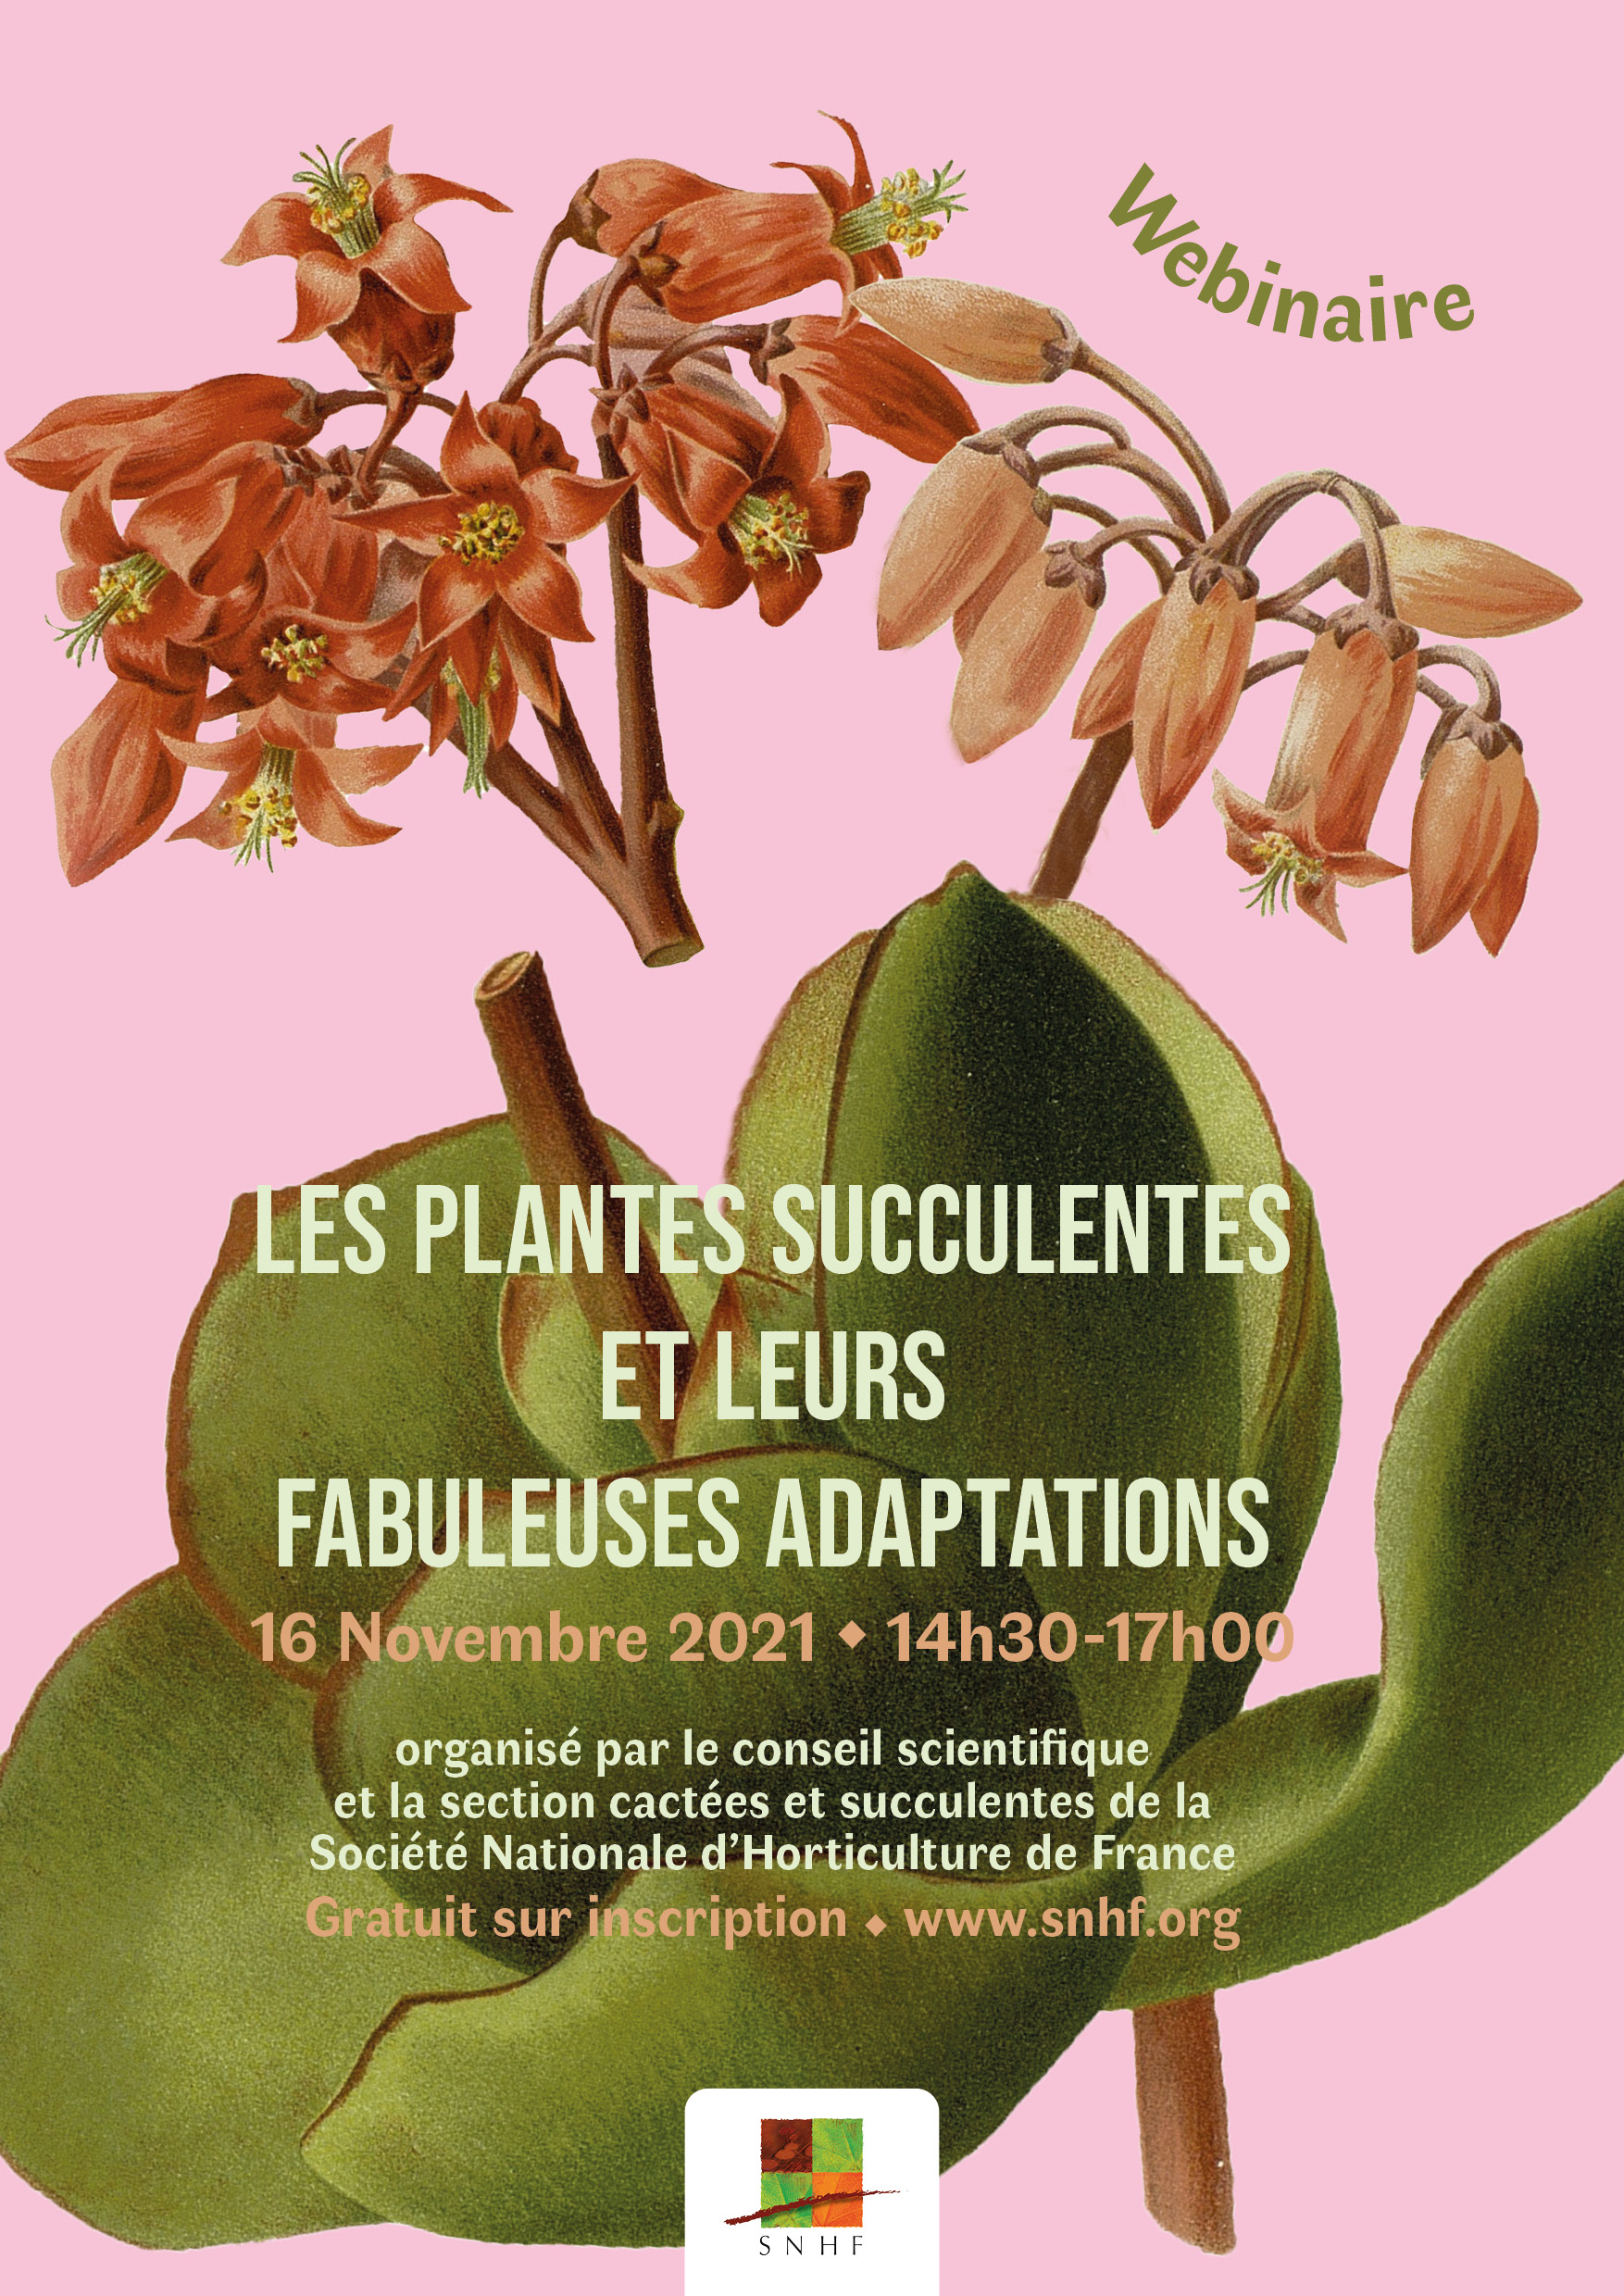 La conservation des fuchsias durant l'hiver - Jardins de France